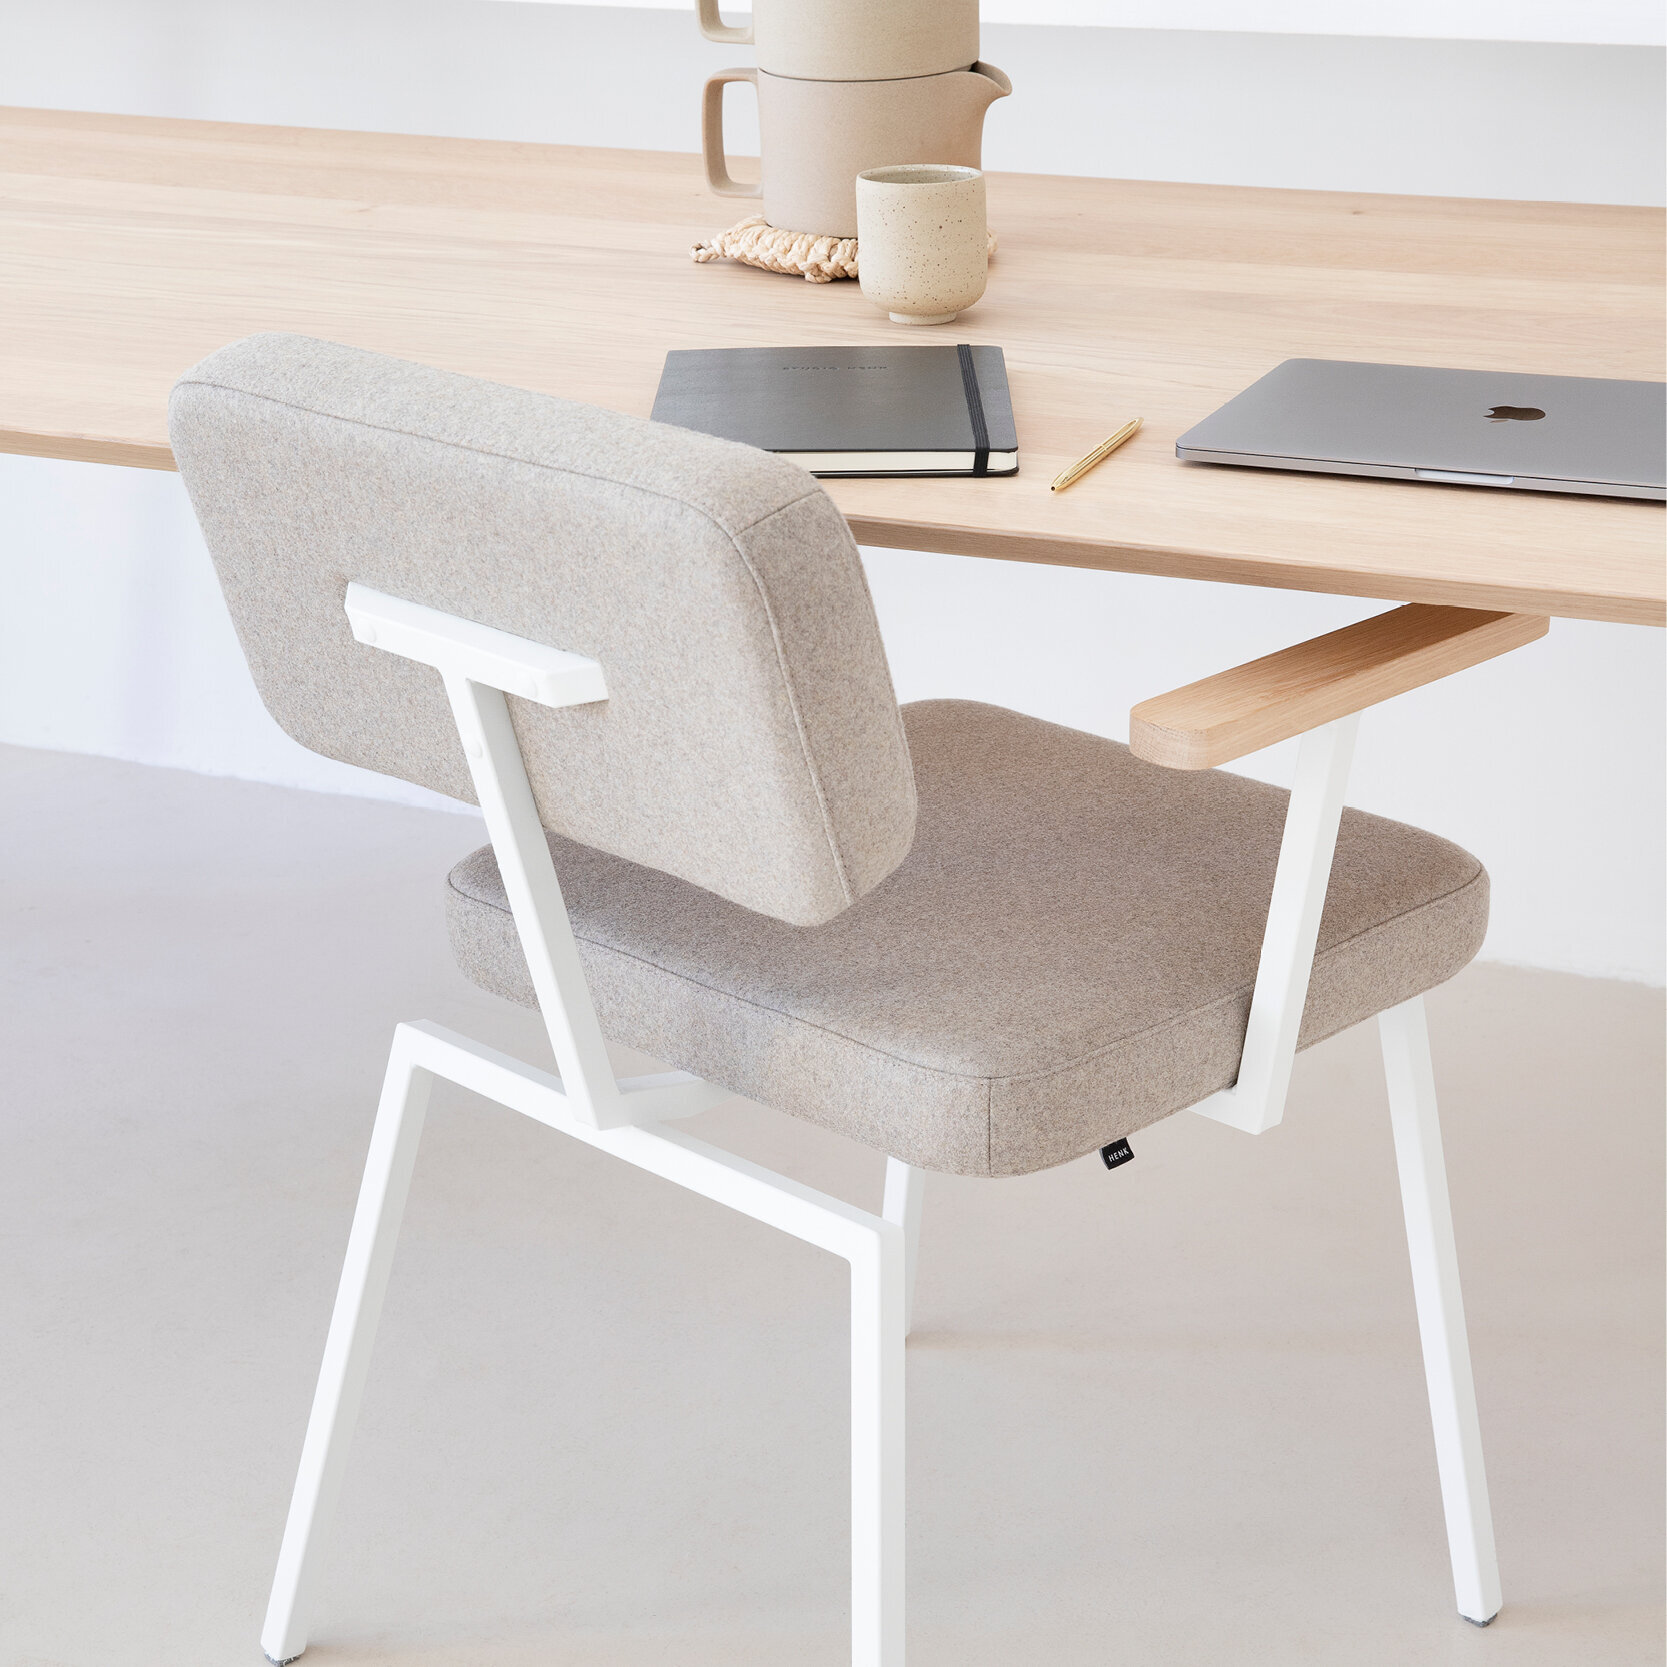 Rectangular Design dining table | Butterfly Home Desk Steel black powdercoating | HPL Fenix beige arizona | Studio HENK| 